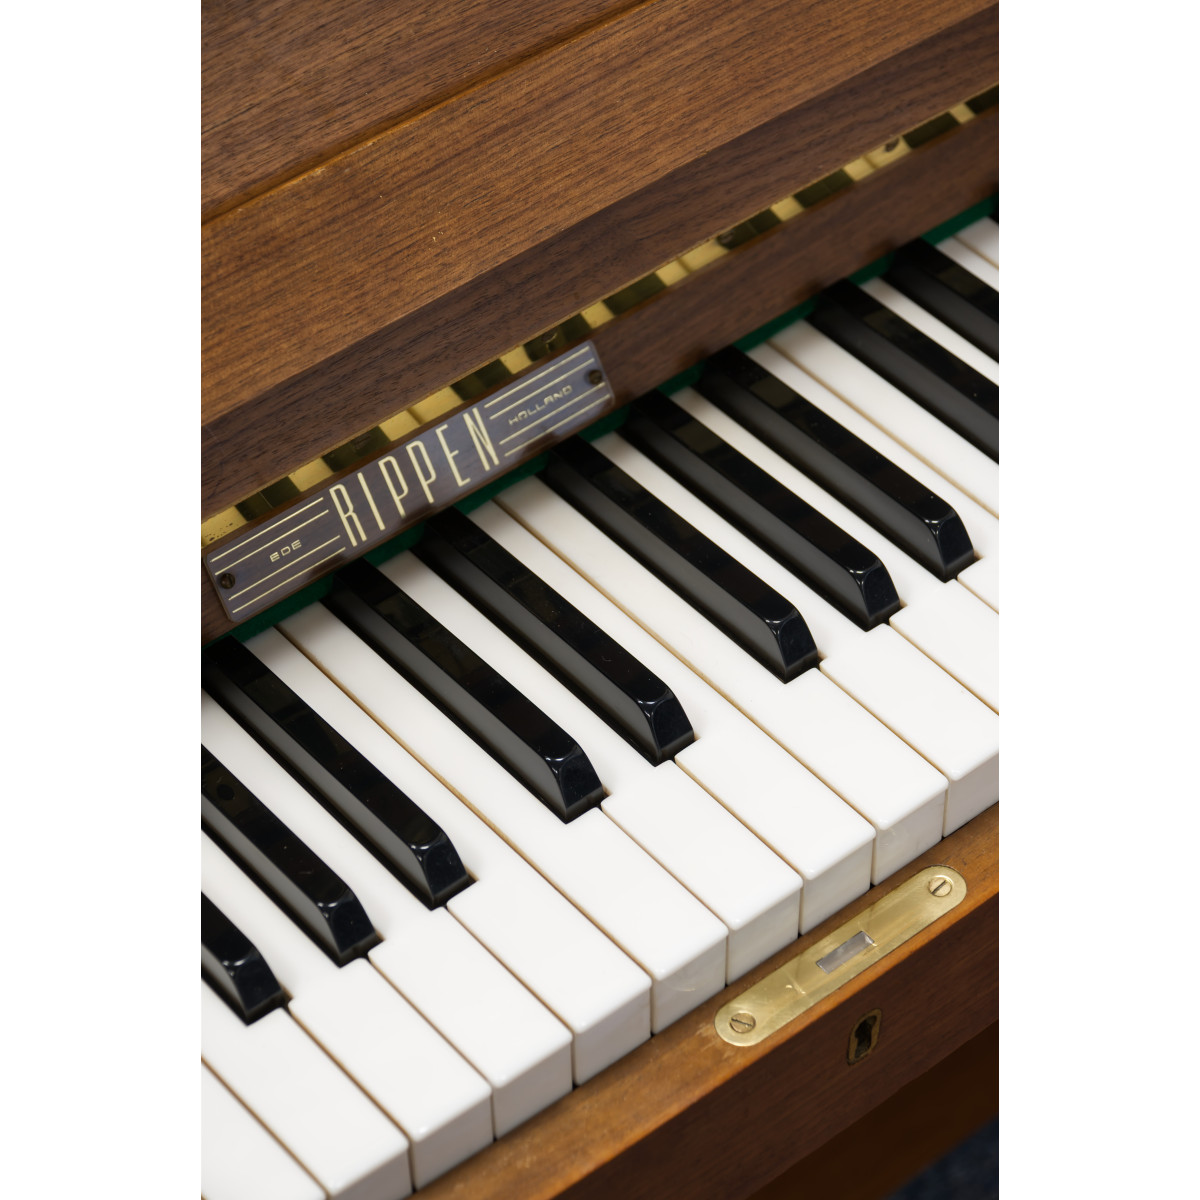 Niederländisches Klavier aus den 70ern, Marke Rippen, gebraucht, Ansicht: Klaviatur